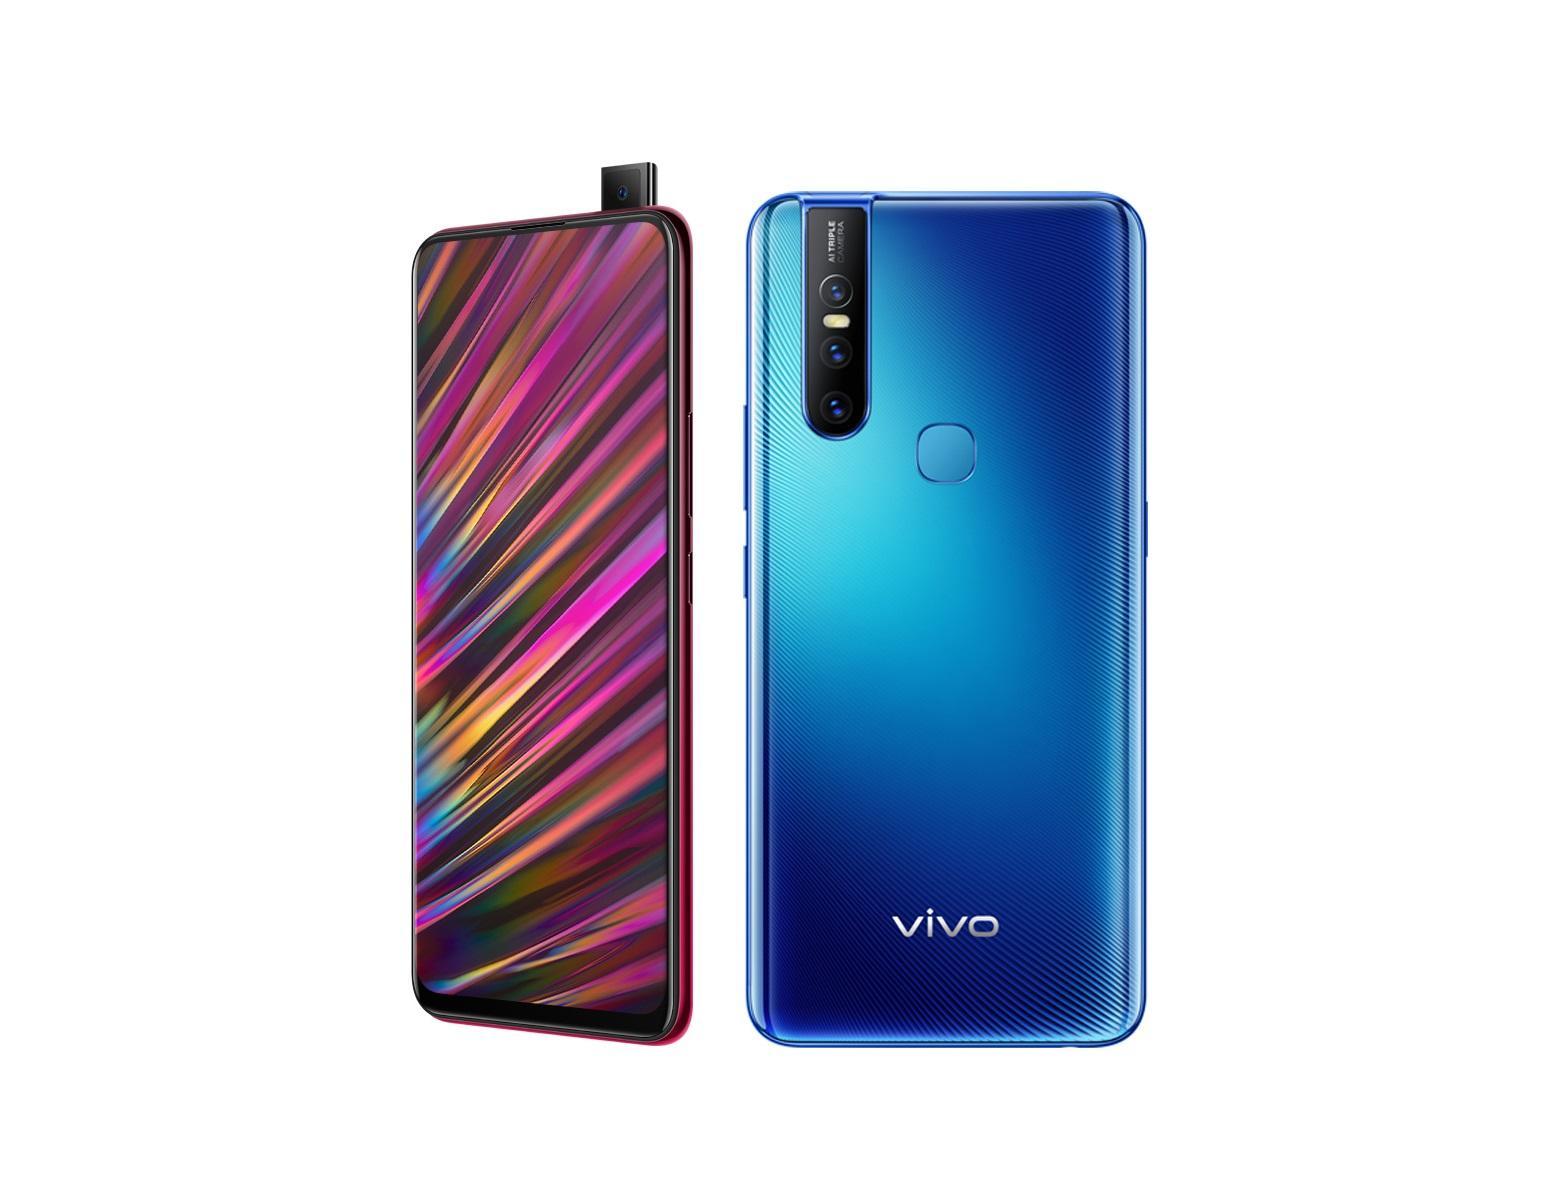 Vivo S1 स्मार्टफोन को जल्द भारत में लाँच किया जा सकता हैं, इसकी तस्वीर सामने आयी